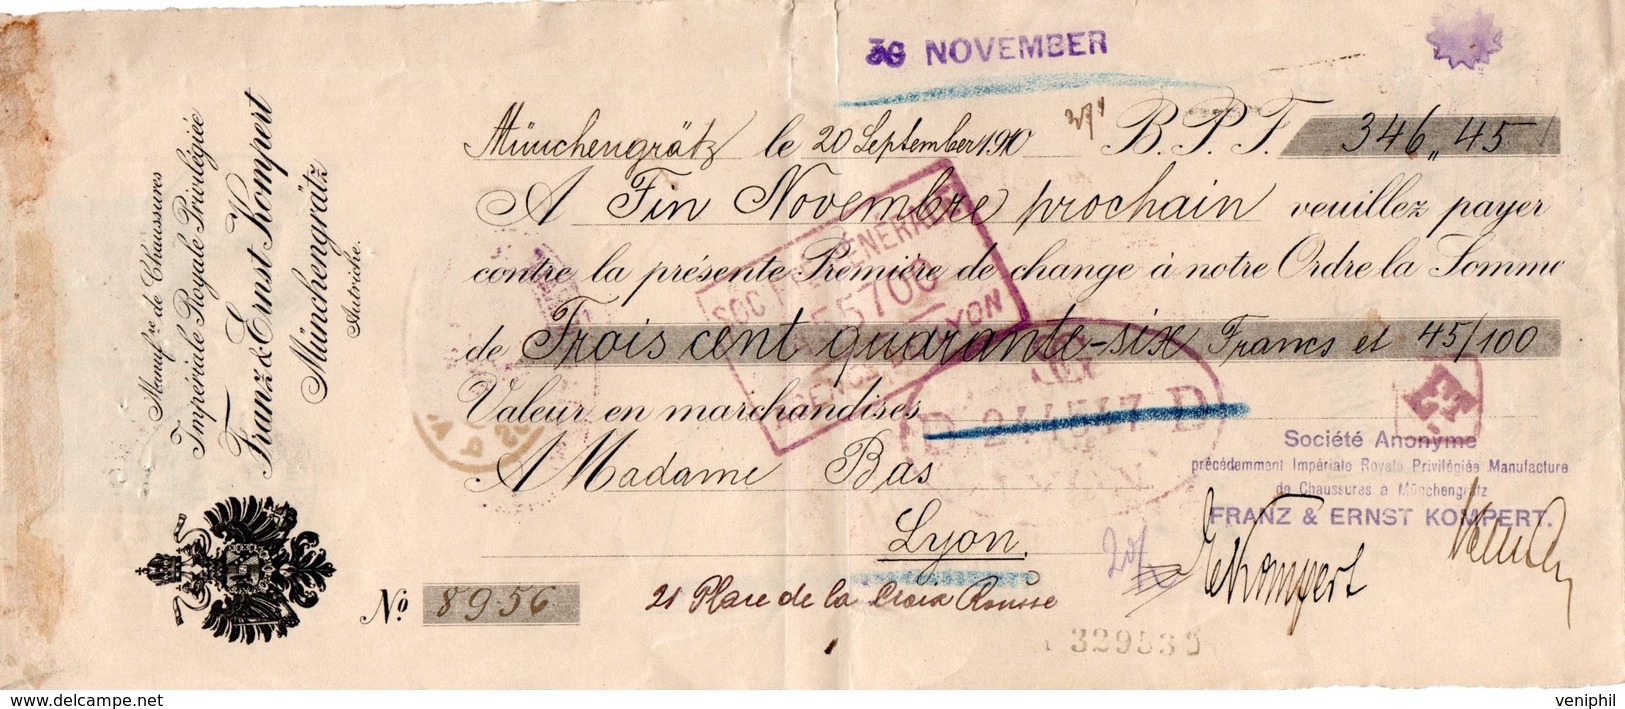 LETTRE DE CHANGE TIMBREE -AUTRICHE - MANUF DE CHAUSSURES IMPERIALE ROYALE -MUNCHENGRATTZ -1910 - Bills Of Exchange